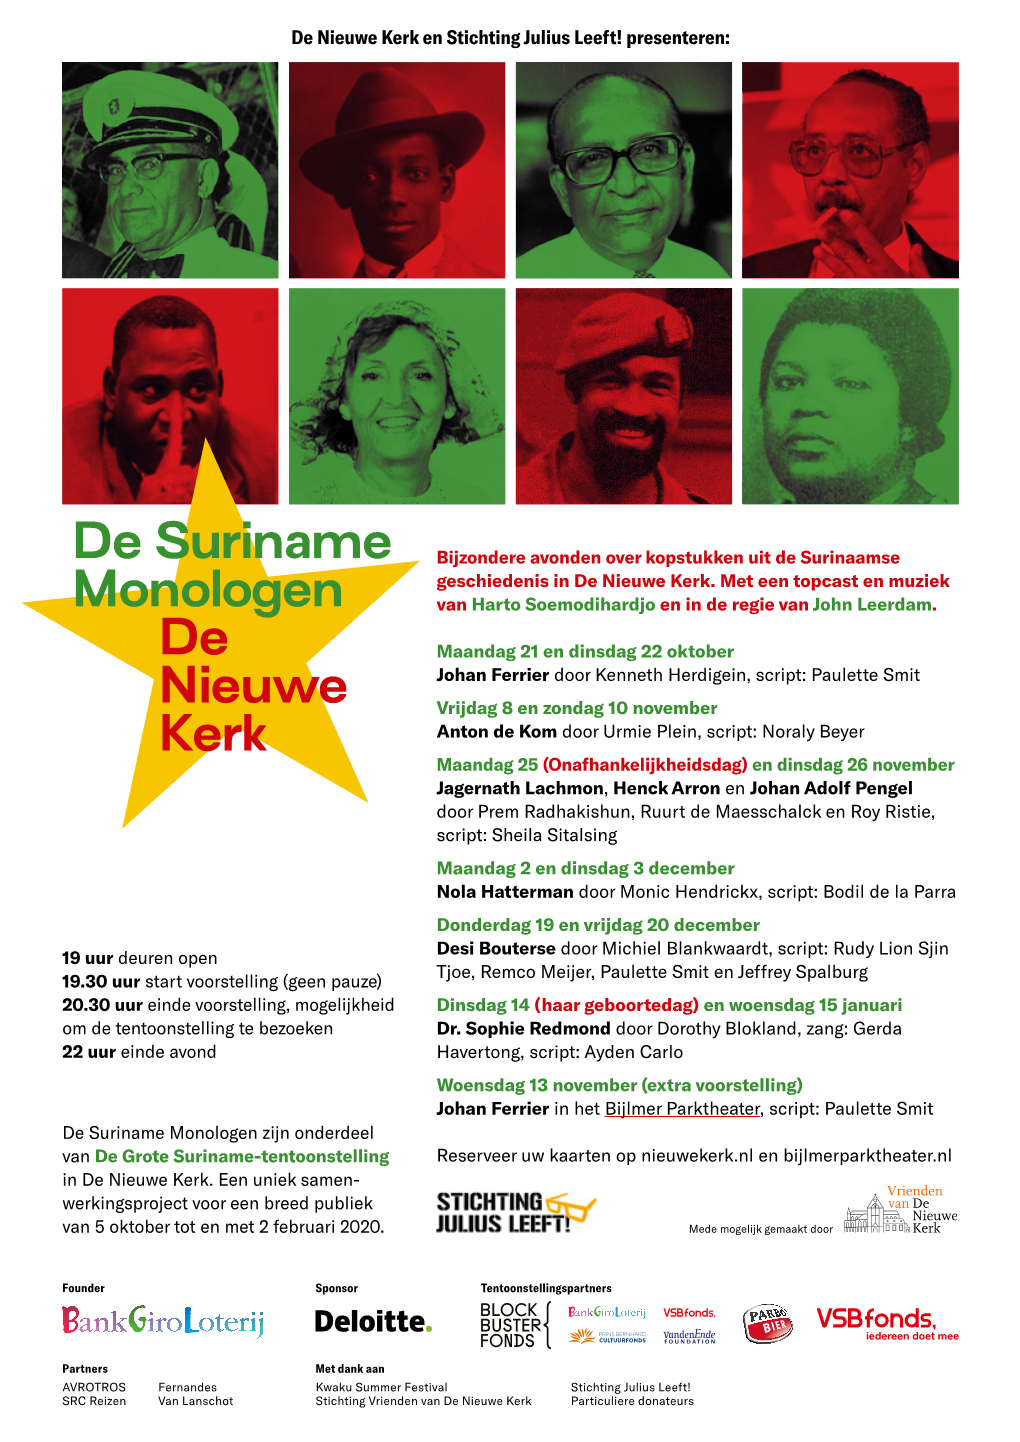 De Suriname Monologen De Nieuwe Kerk